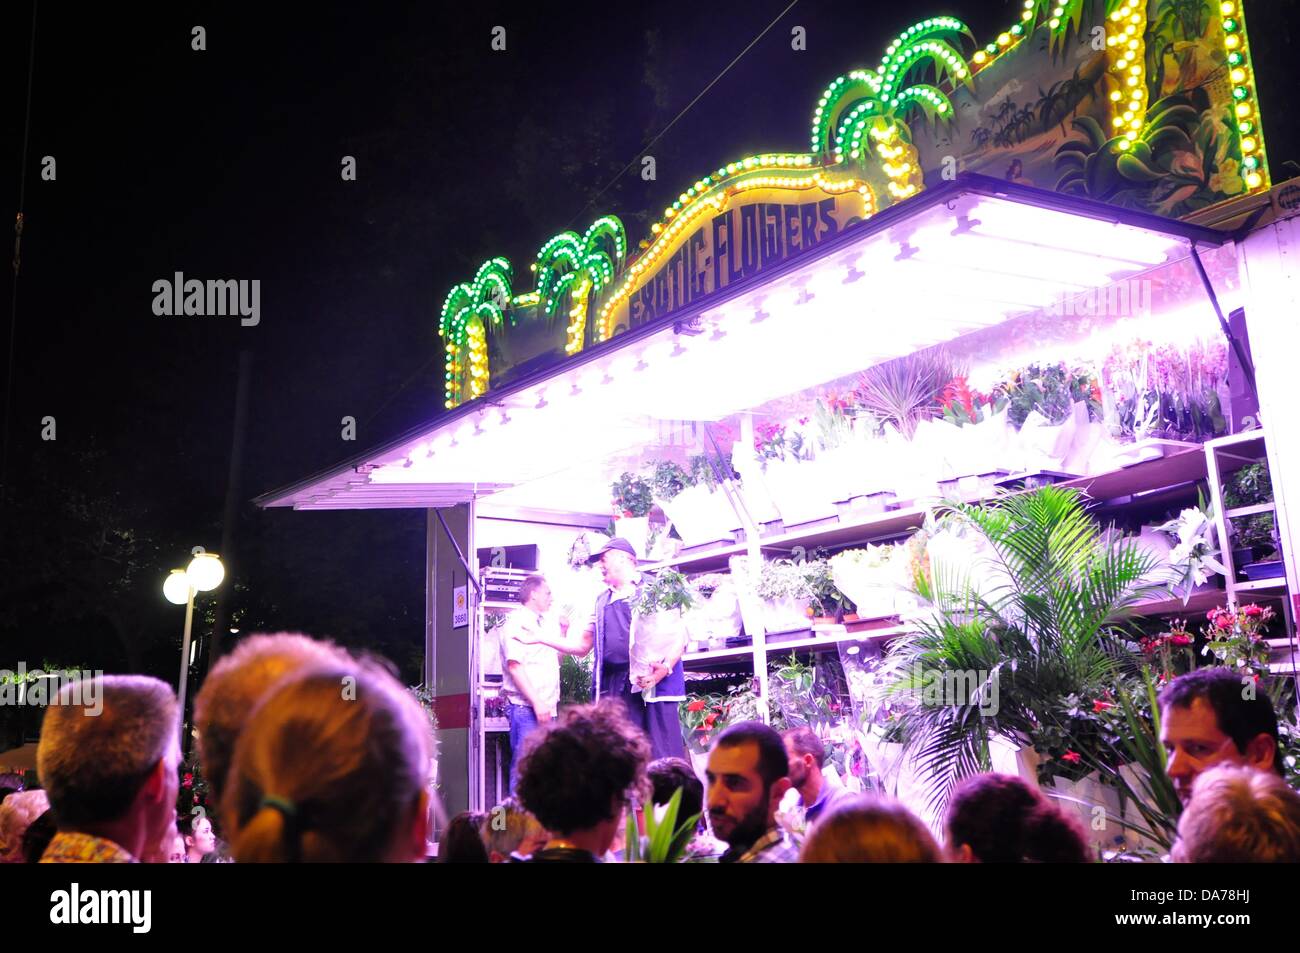 Zürich, Schweiz. 5. Juli 2013. Im Zentrum von Zürich, Schweiz, ist ein weltweit großes Festival für drei Tage statt. Partys, Karneval, Fahrgeschäfte, Märkte und Essen und trinken steht überall.  -Menschen vor Blume Kaufleute. Stockfoto